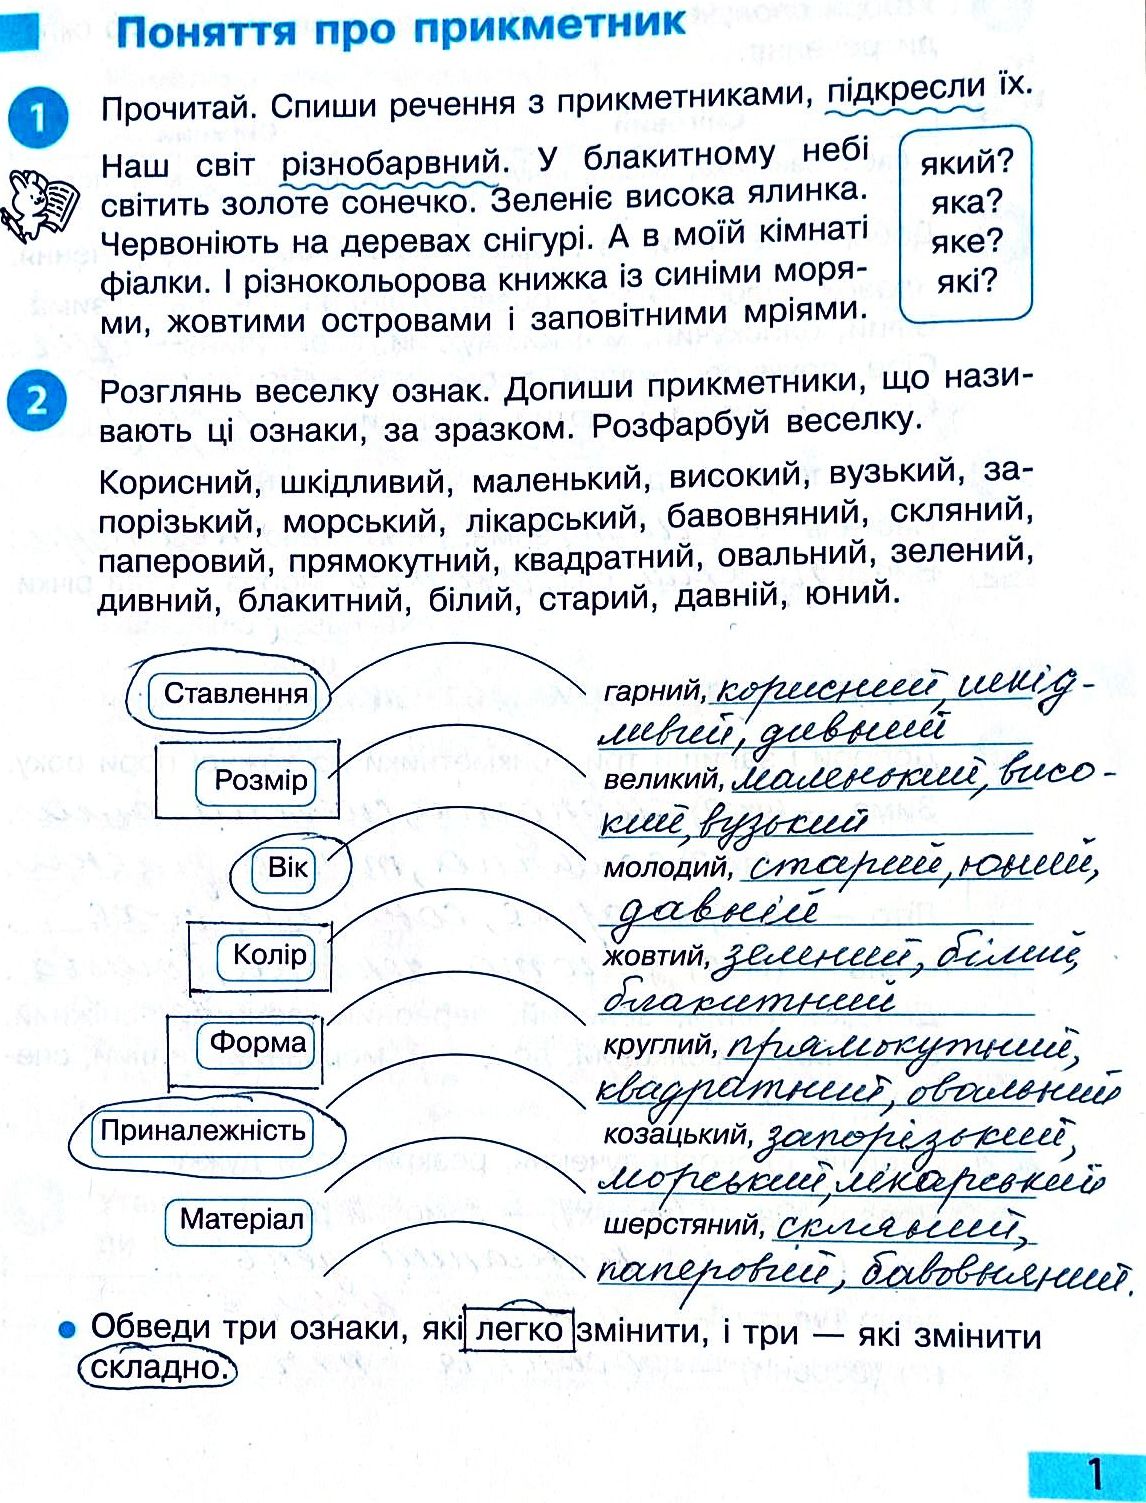 Сторінка 1 частина 2 гдз 3 клас робочий зошит українська мова Большакова